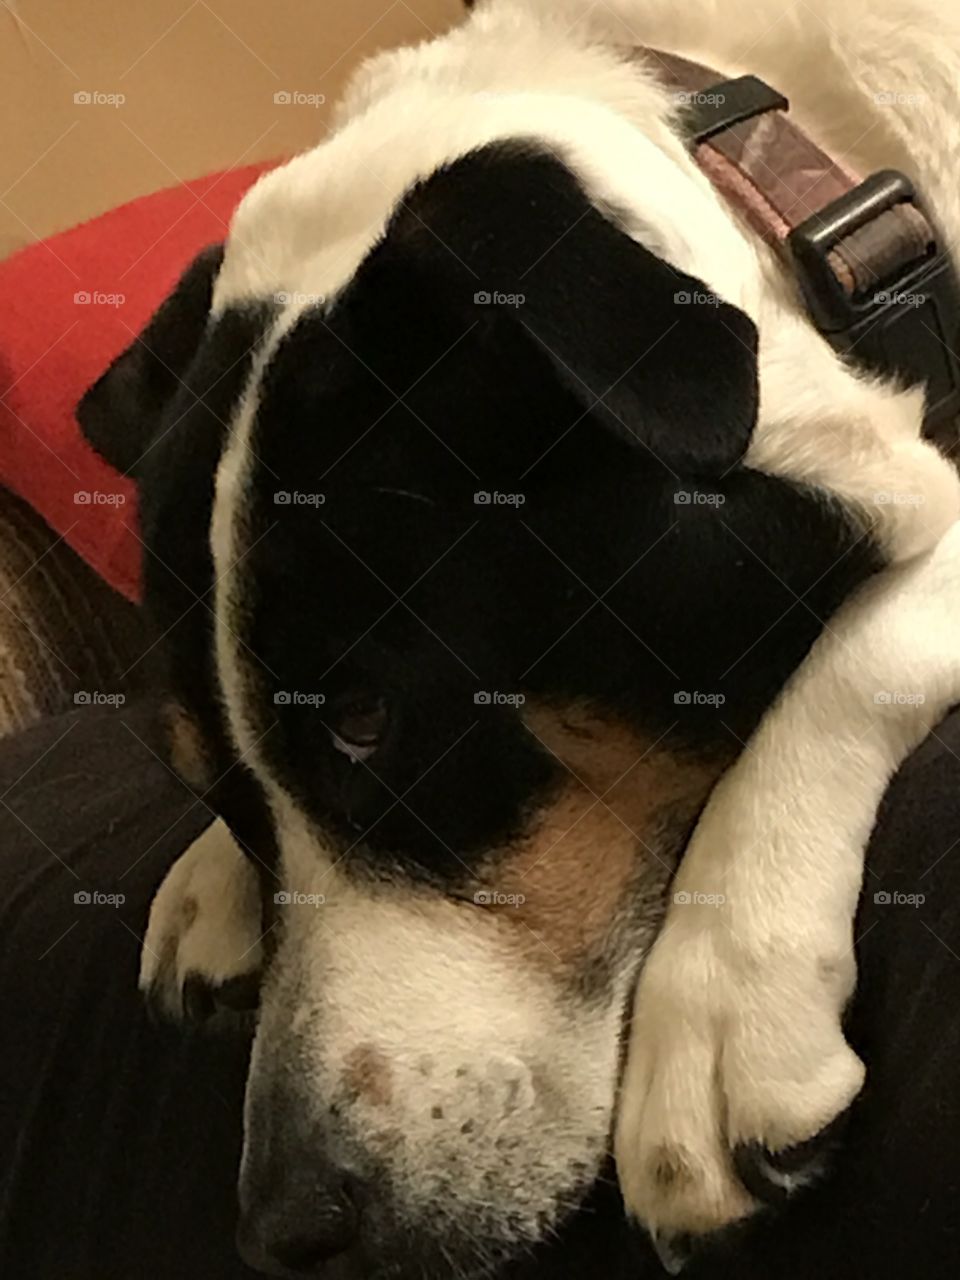 Sad Eyes Dog